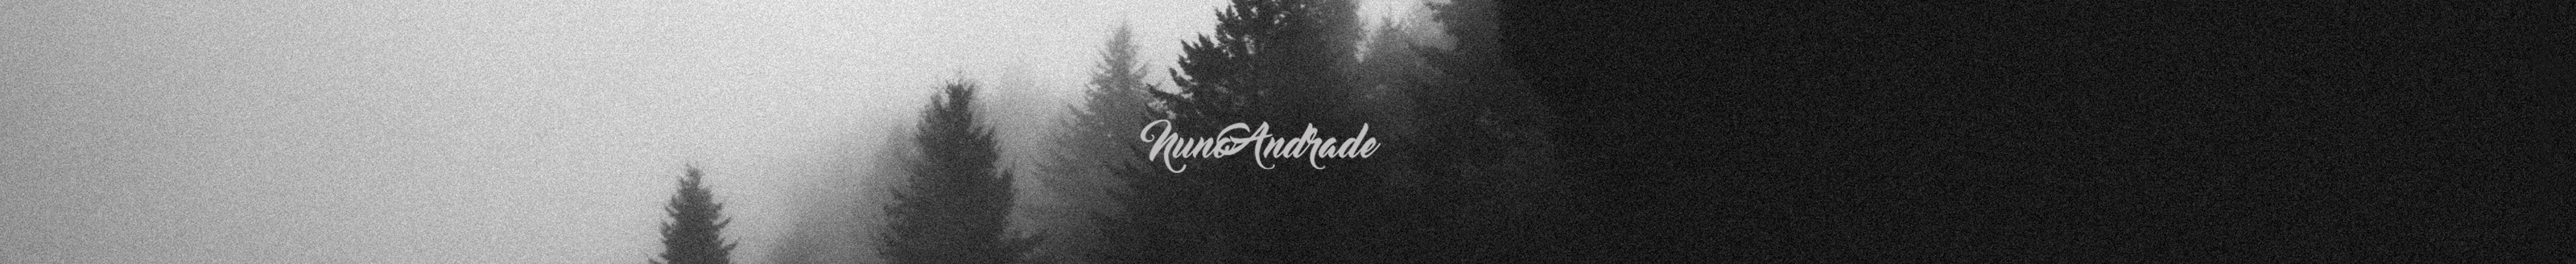 Nuno Andrade's profile banner